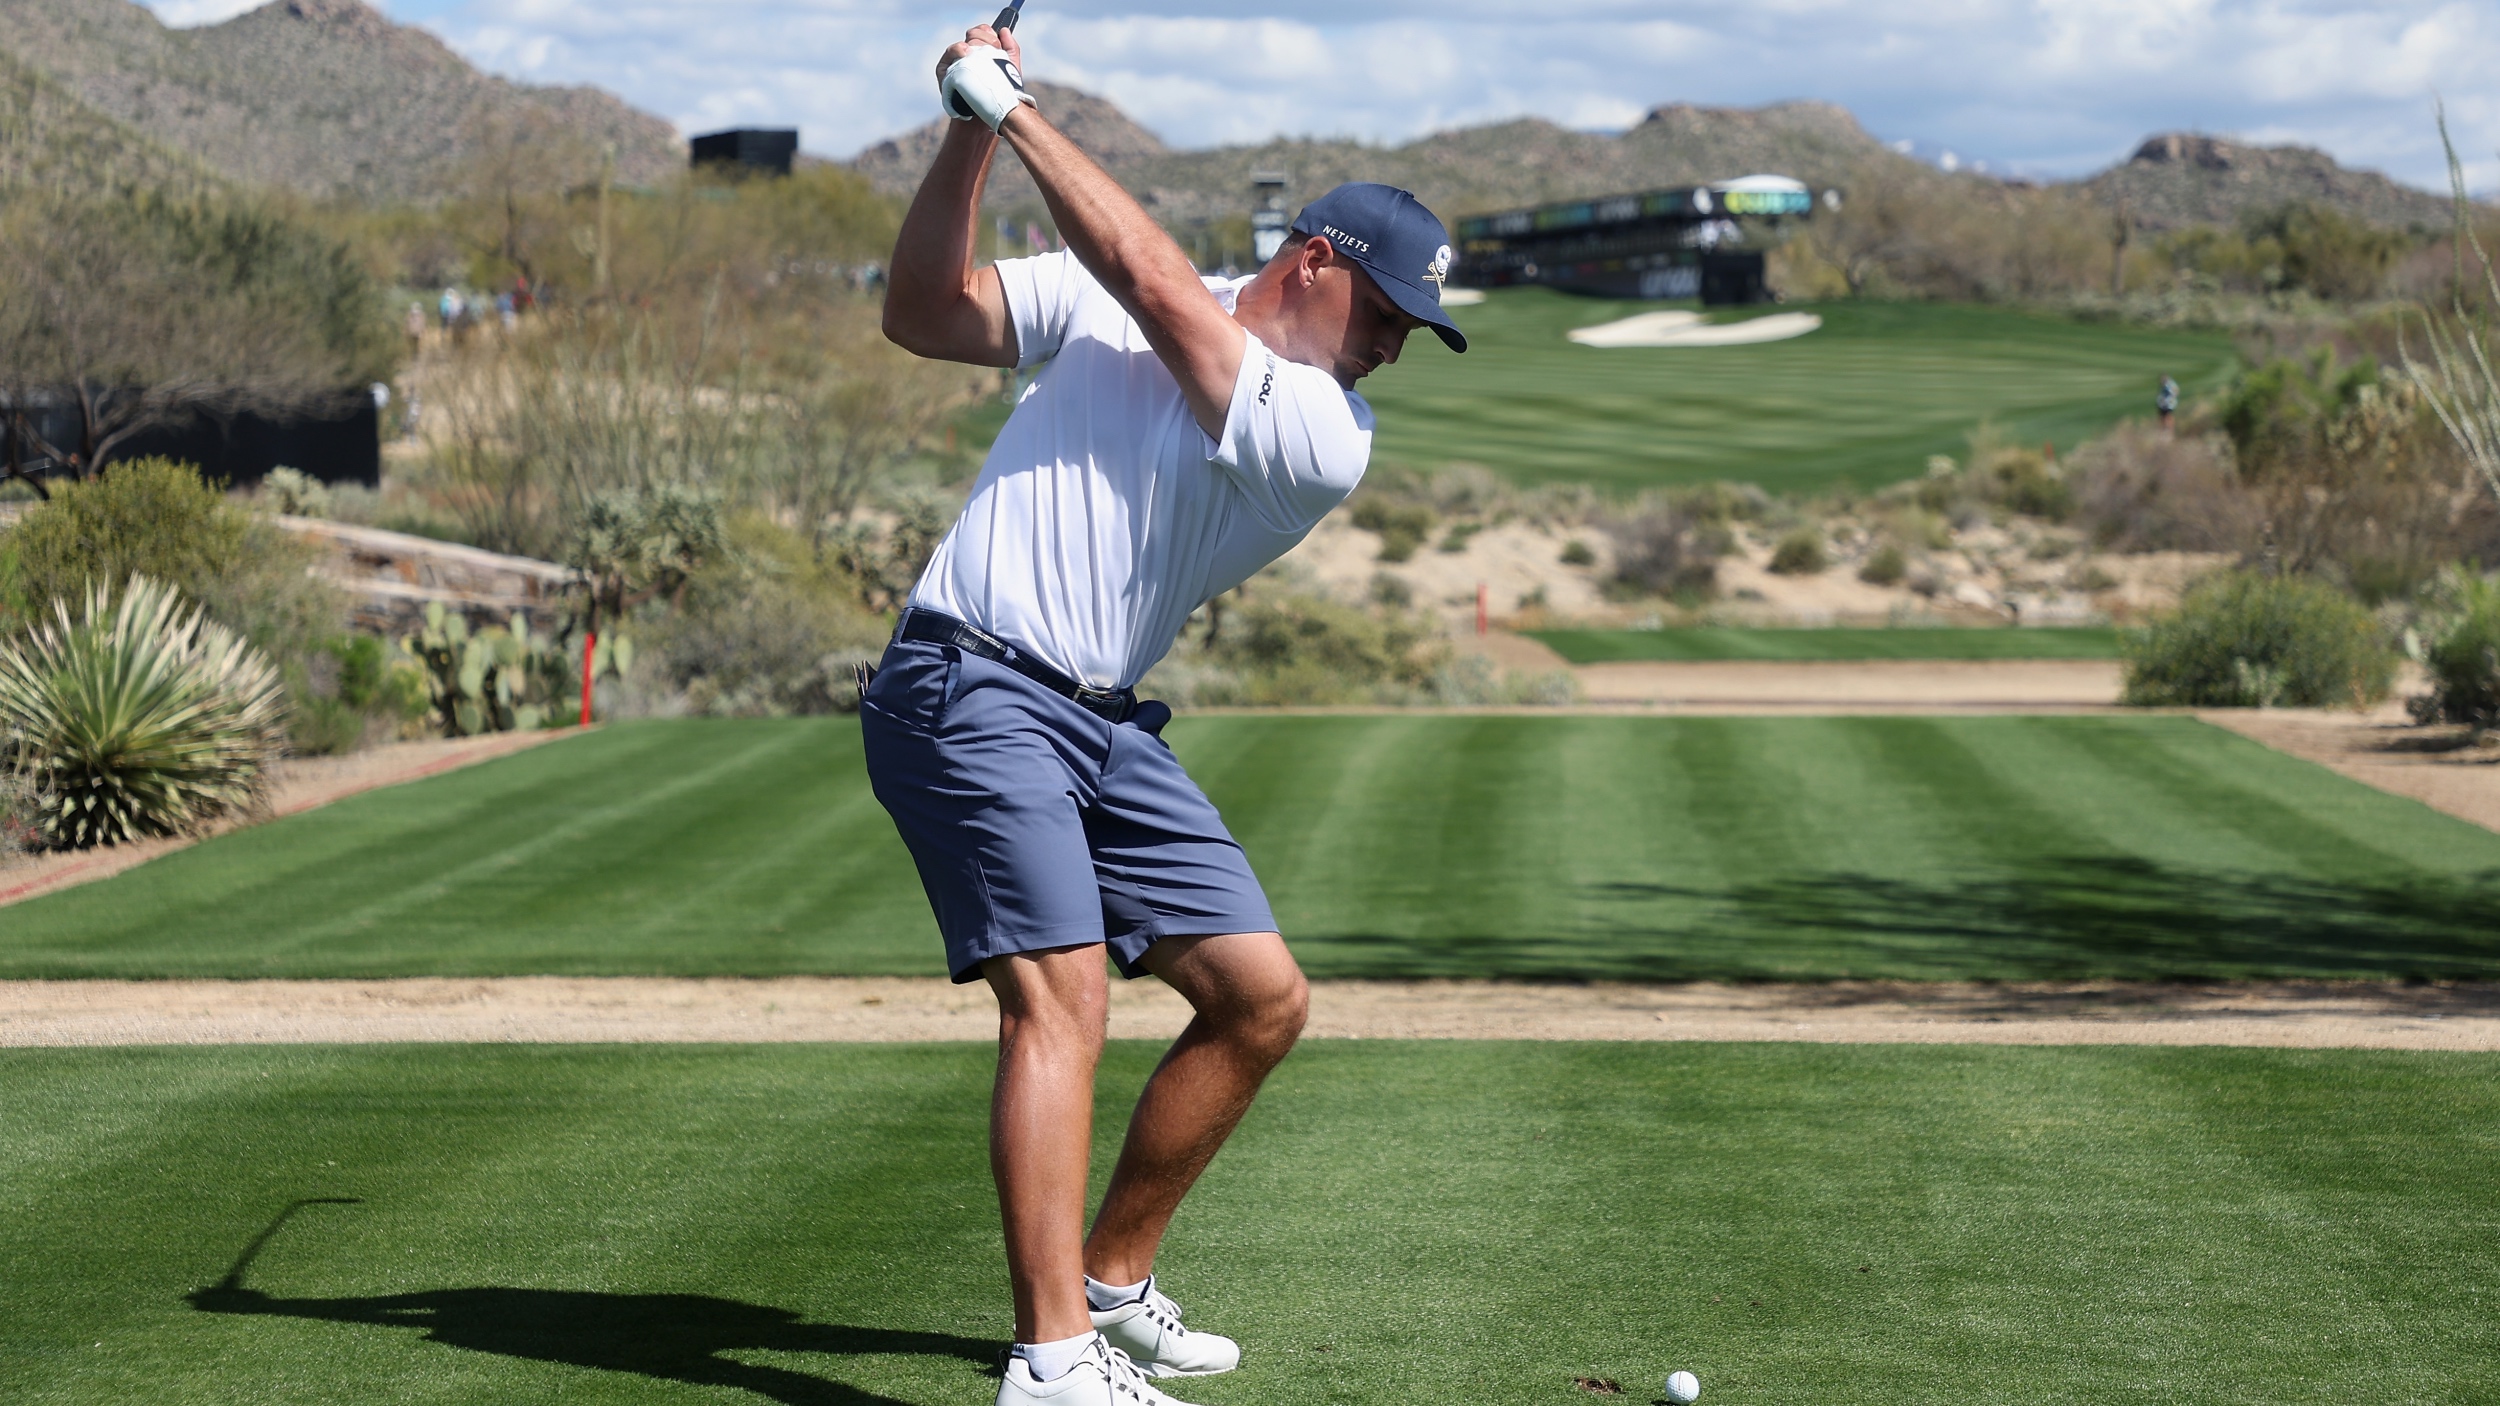 Bryson DeChambeau swinging a golf club